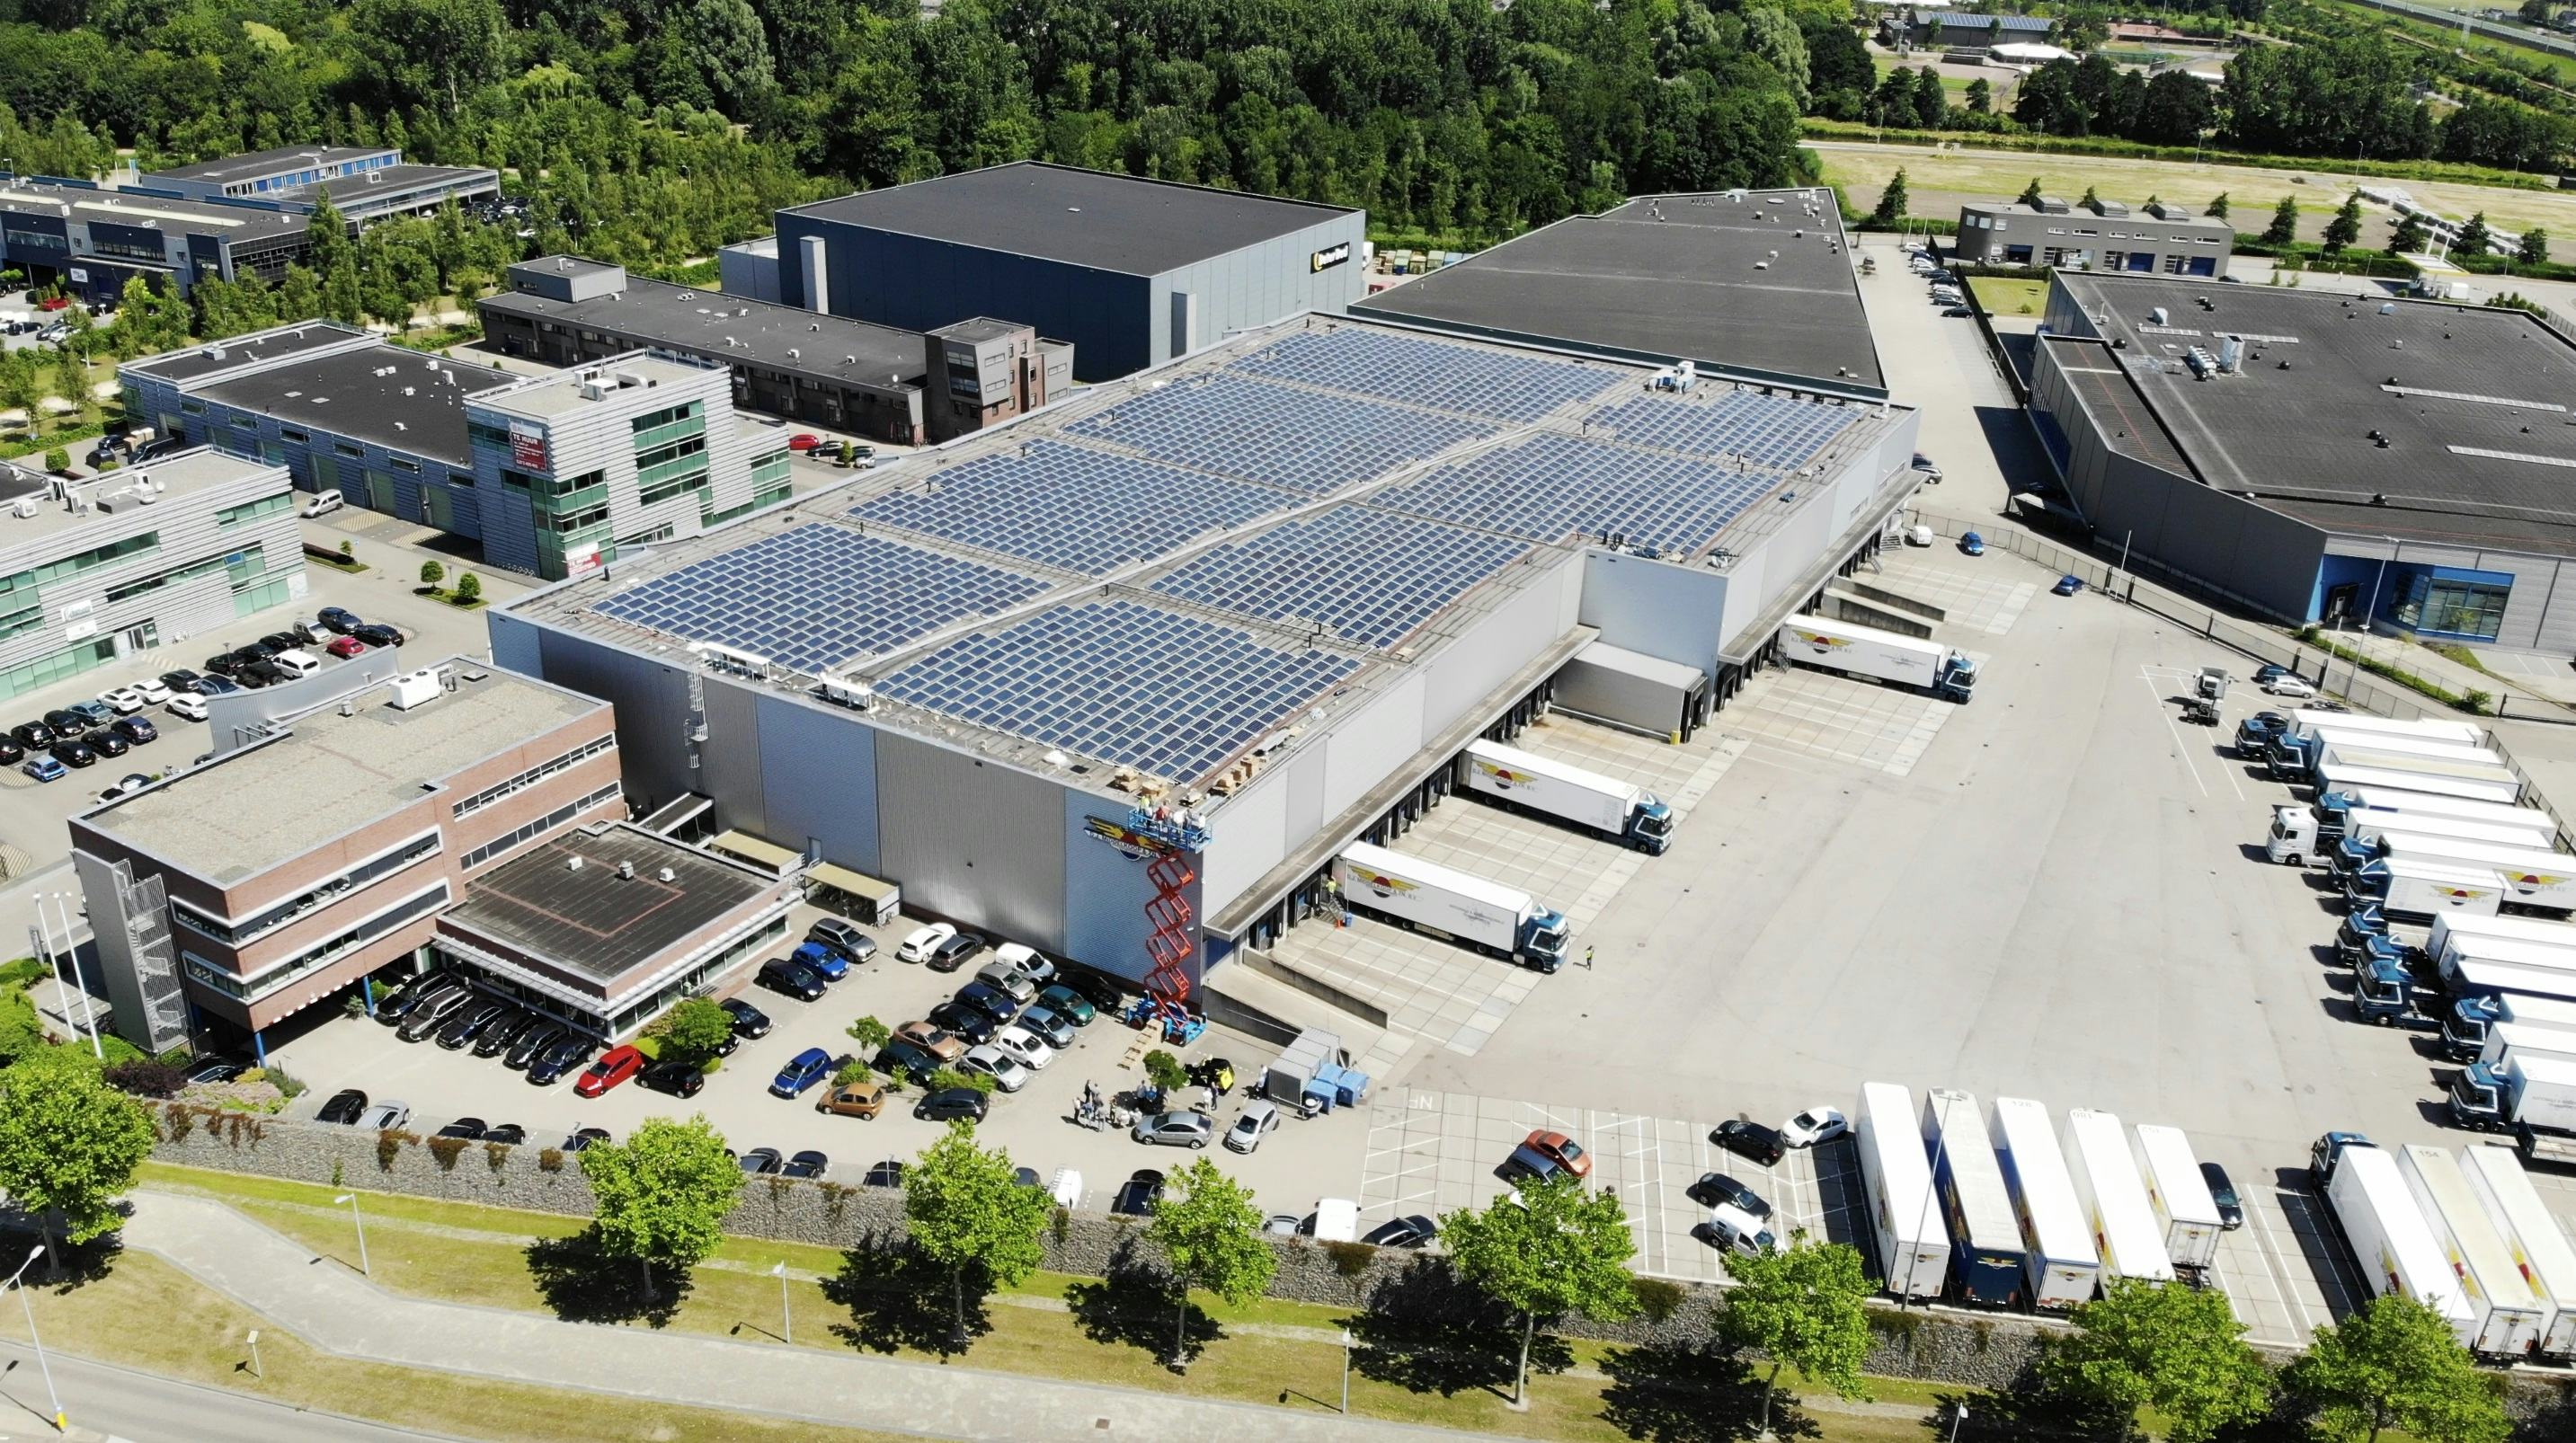 D.J. Middelkoop & Zn stelt bedrijfsdak beschikbaar voor 2.000 zonnepanelen